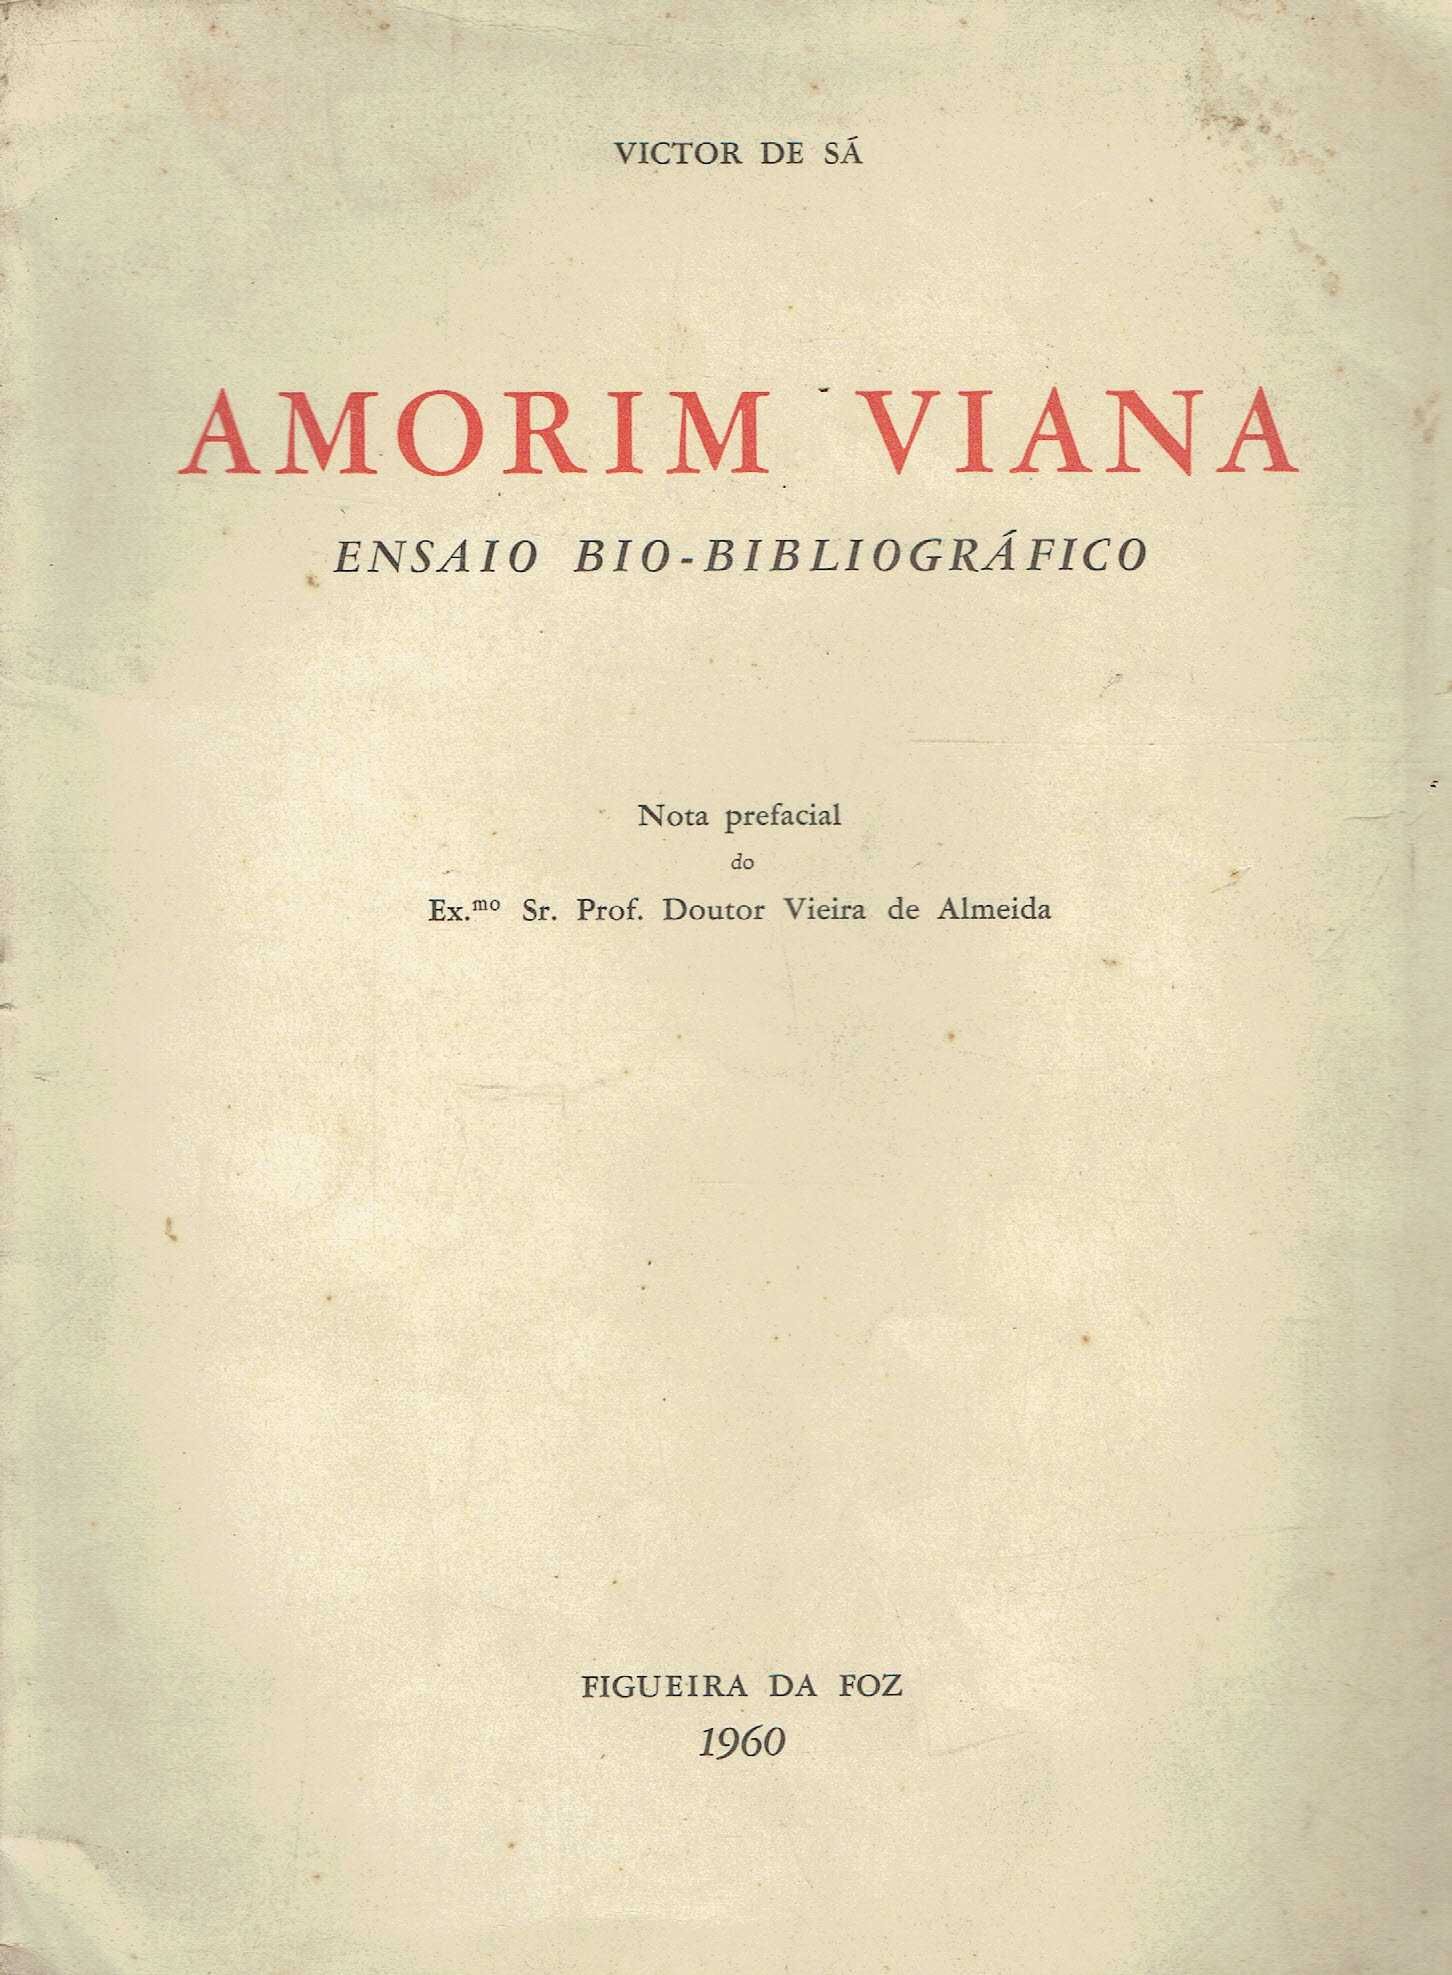 2099
	
Amorim Viana 
de Vítor  de Sá.